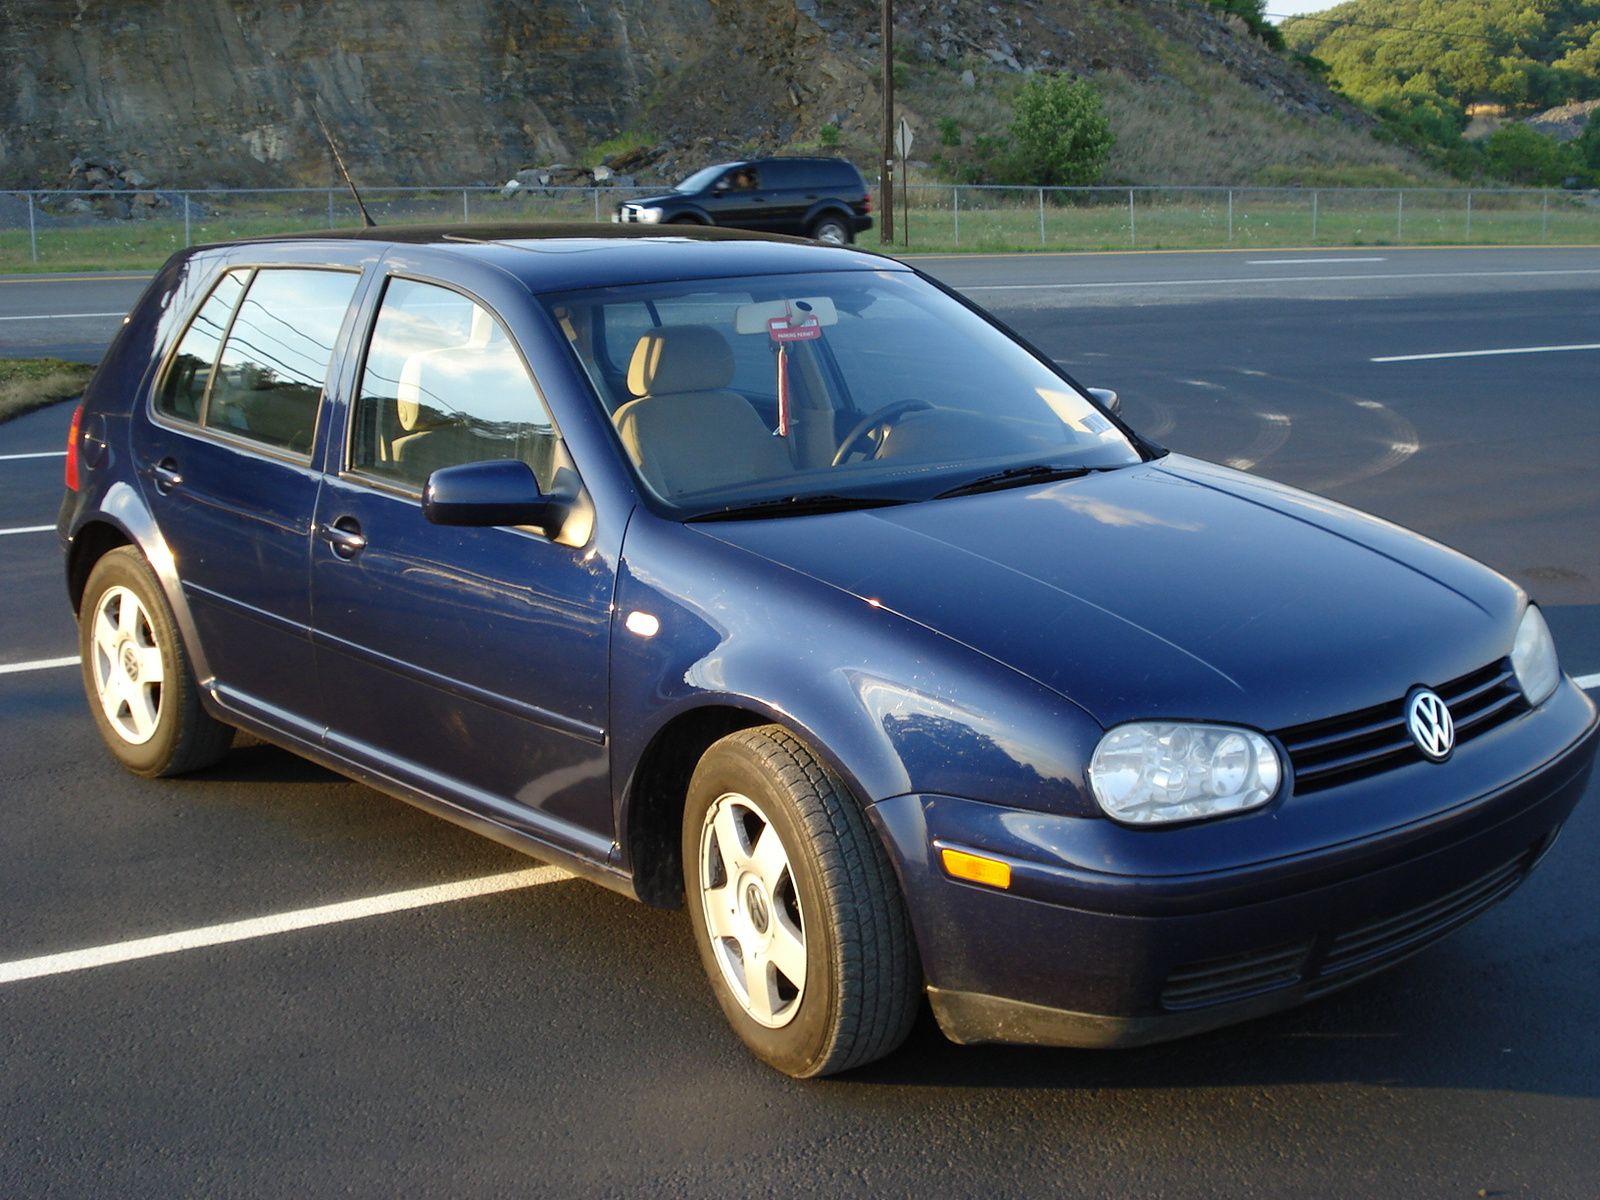 2000 Volkswagen Golf - Pictures - CarGurus | Golf pictures, Volkswagen golf,  Volkswagen